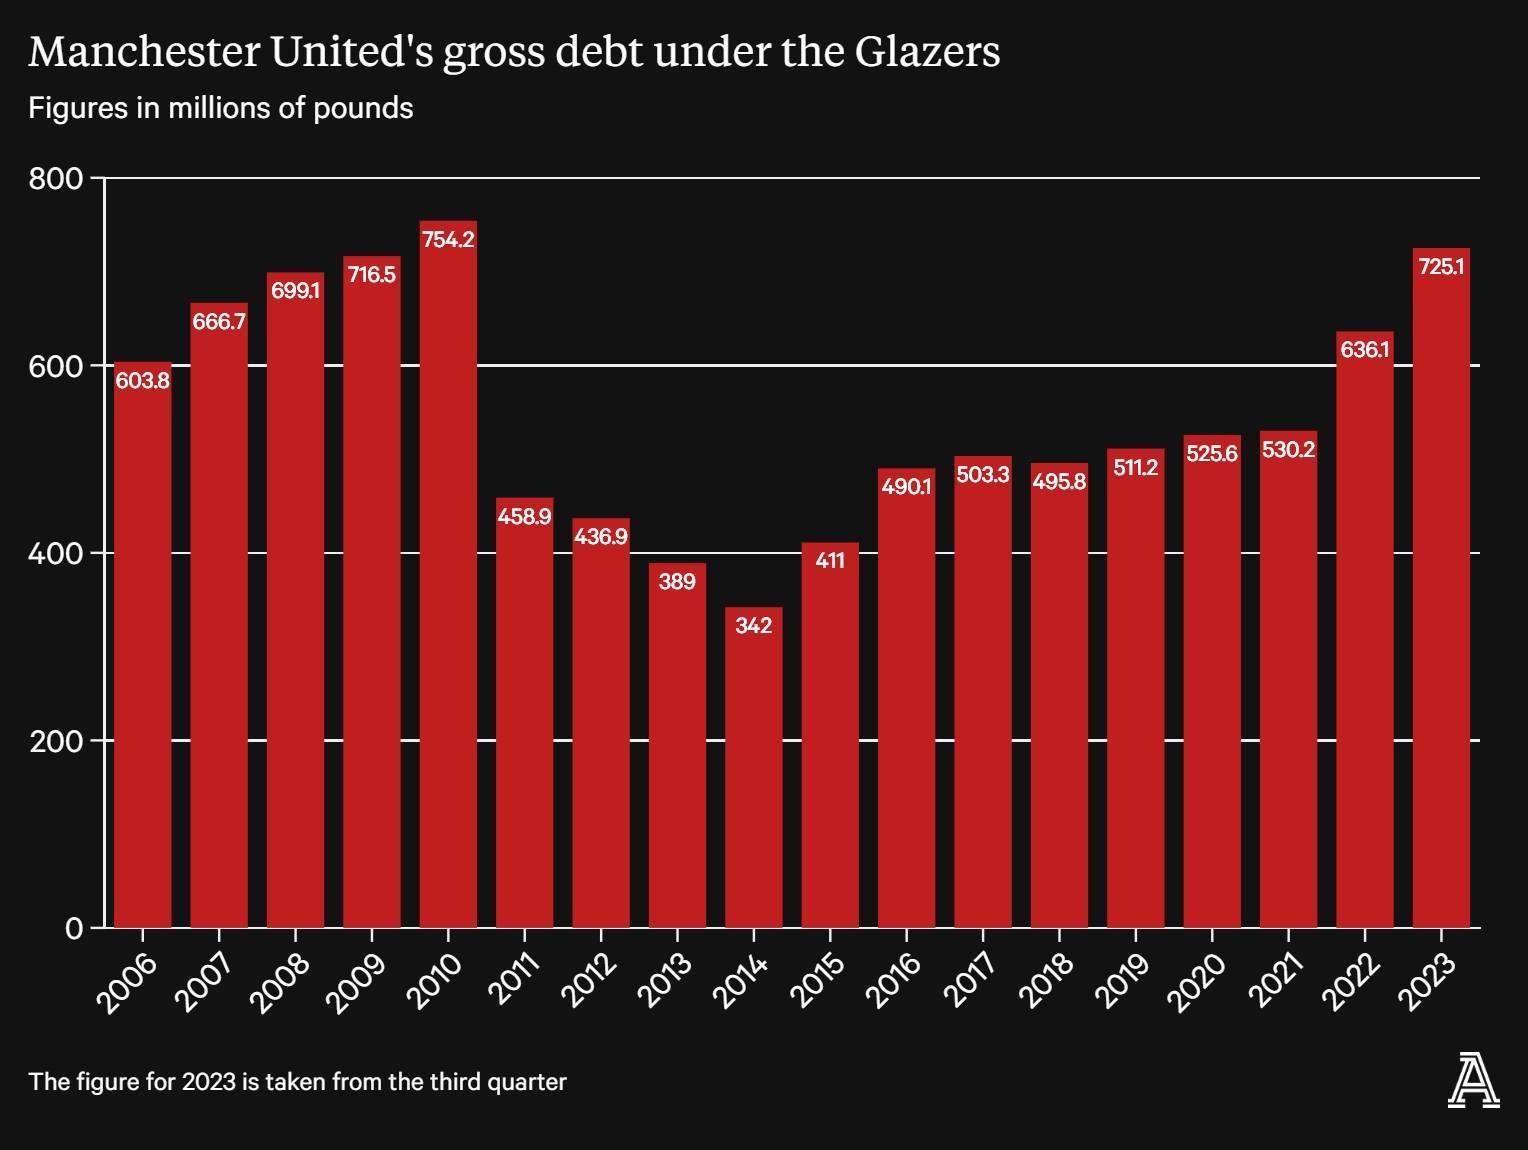 格雷泽时期曼联负债变化：2010年7.54亿最高，2023年已排第二高